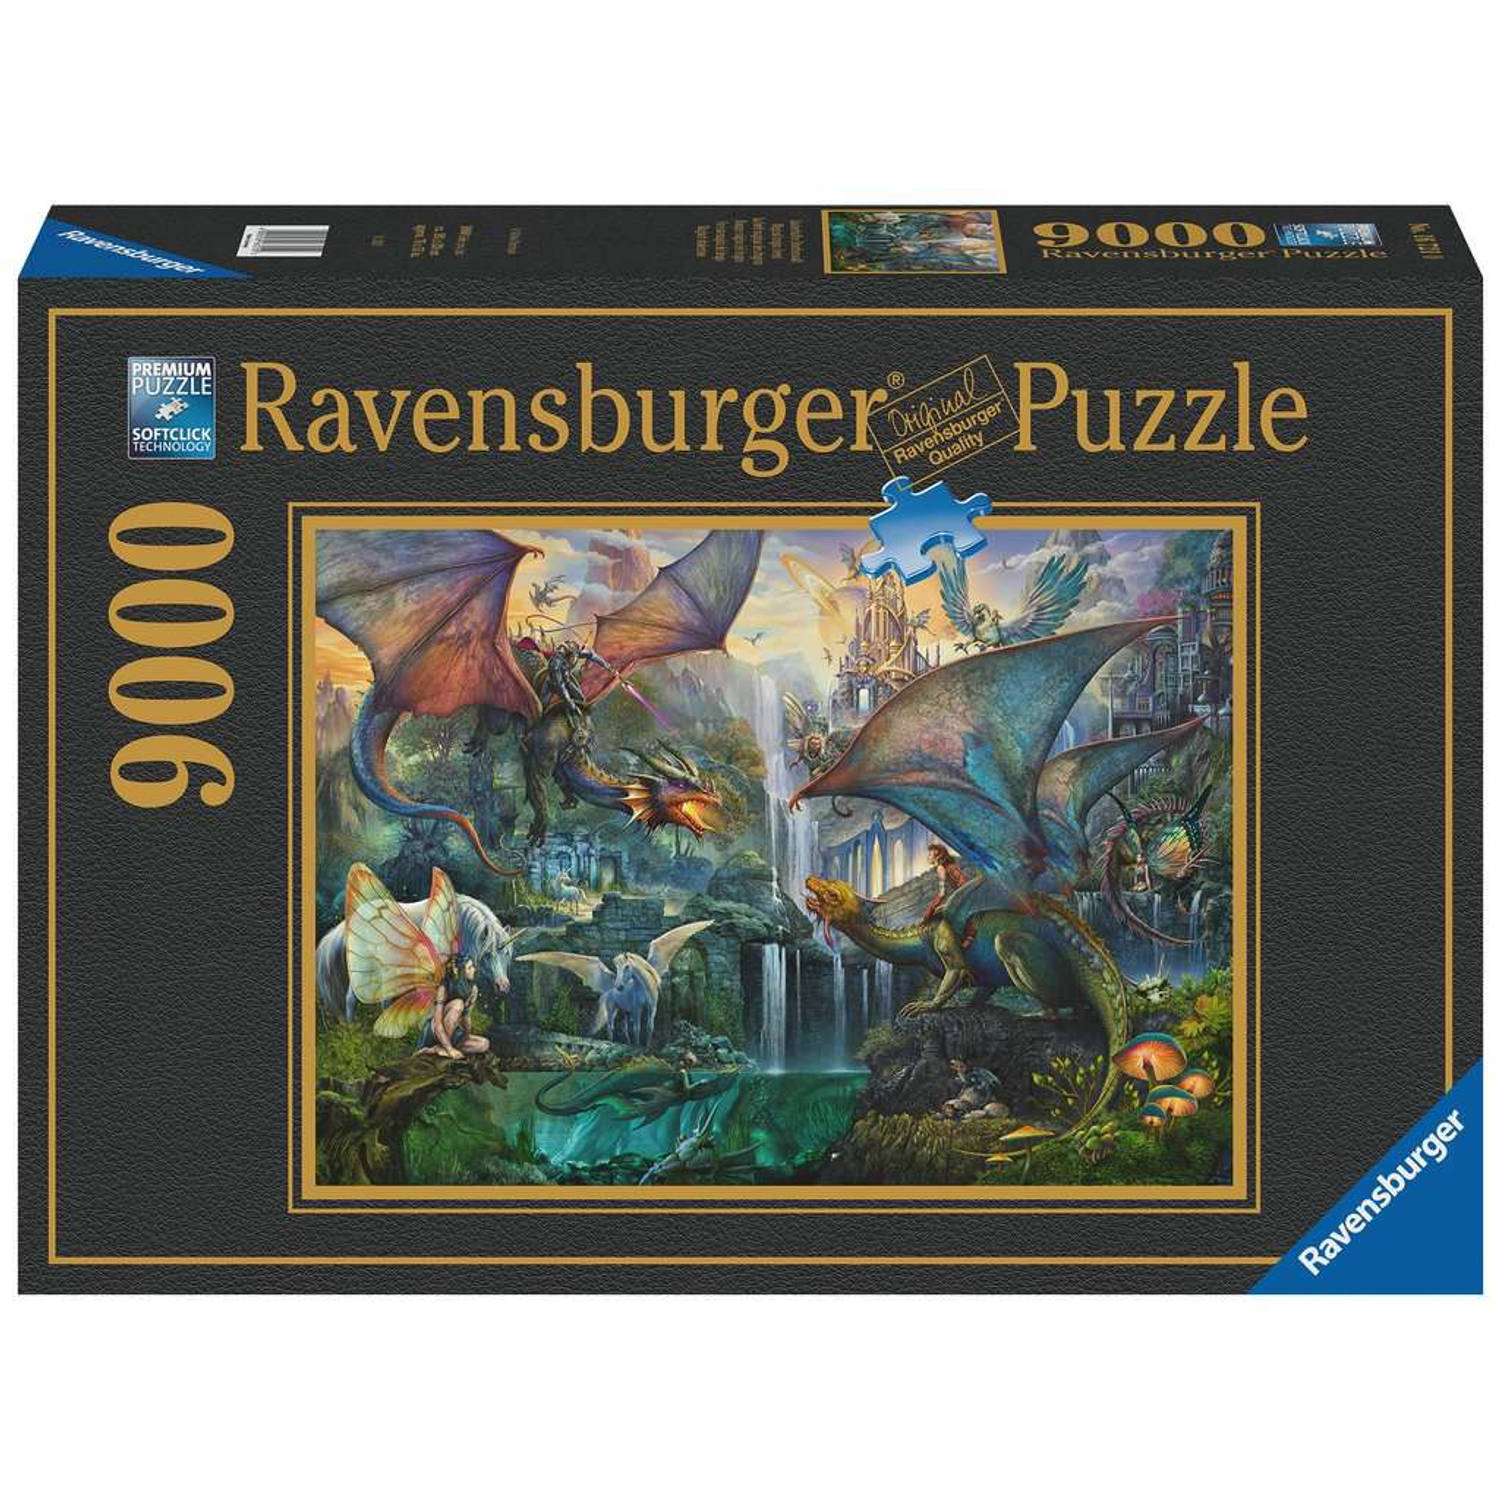 Ravensburger puzzel 9000 stukjes magische drakenbos